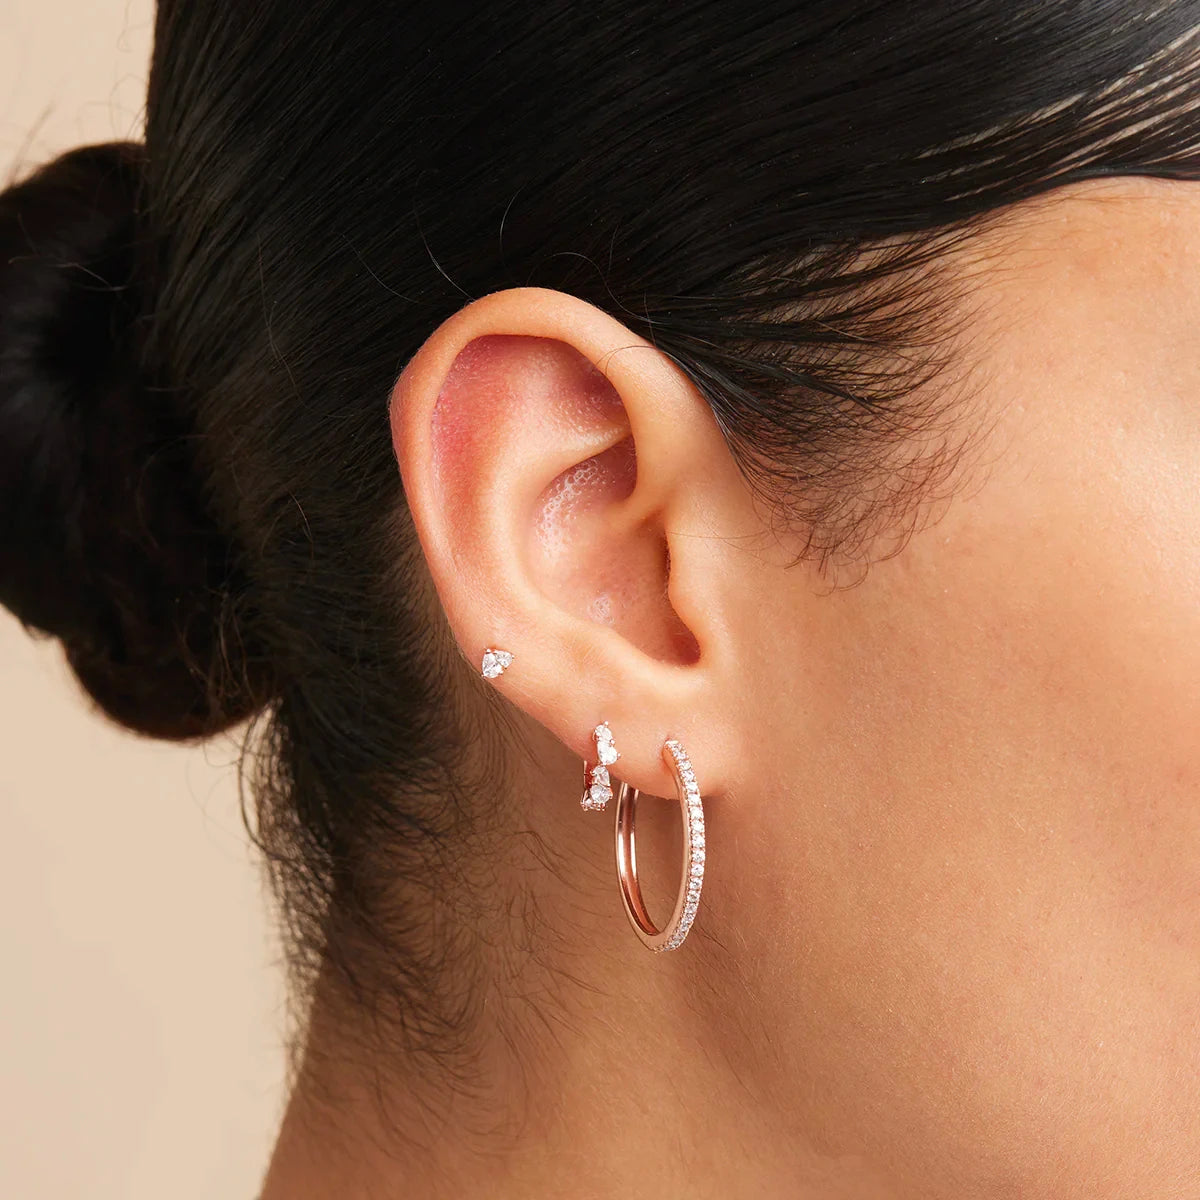 Elegant Hoop Earrings | LINK Necklaces, design your own earring